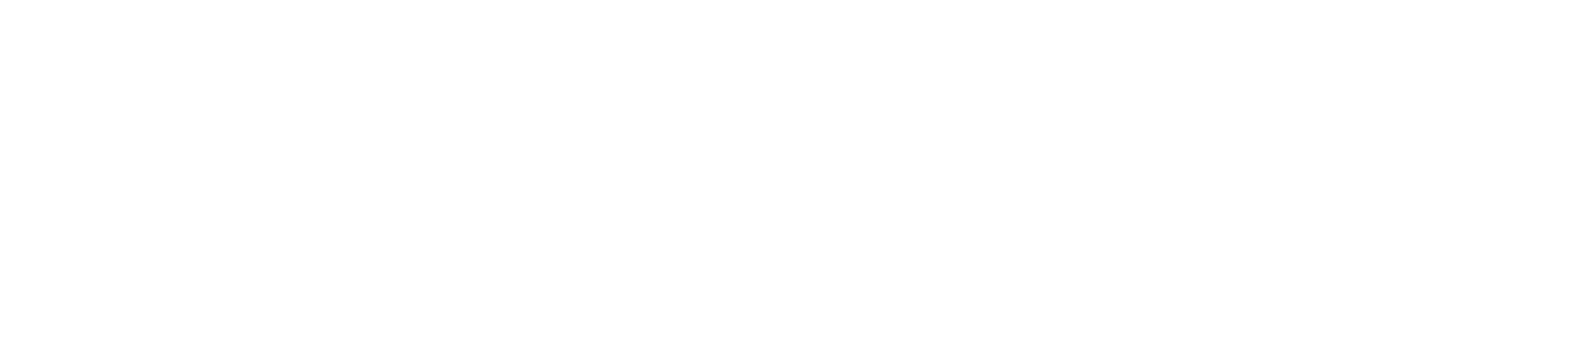 Westrock logo grand pour les fonds sombres (PNG transparent)